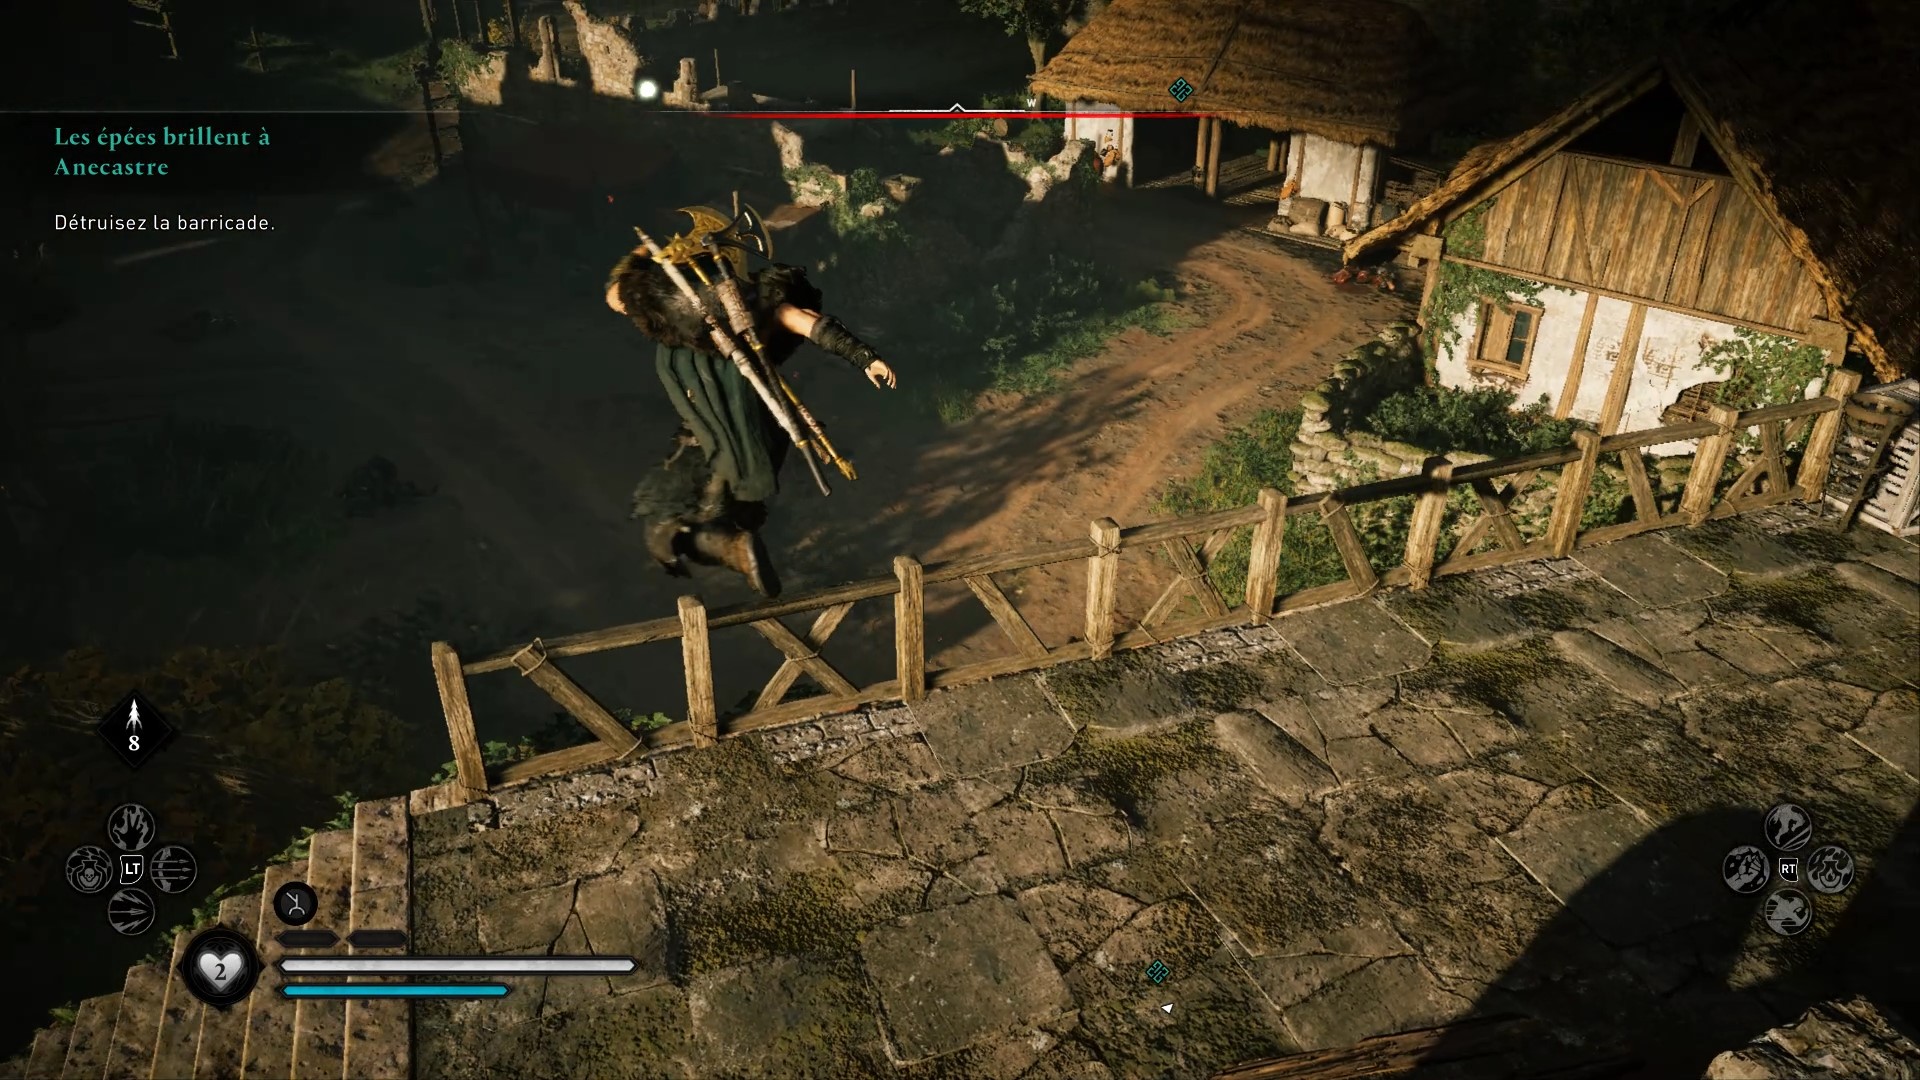 Les épées brillent à Anecestre Assassin's Creed Valhalla